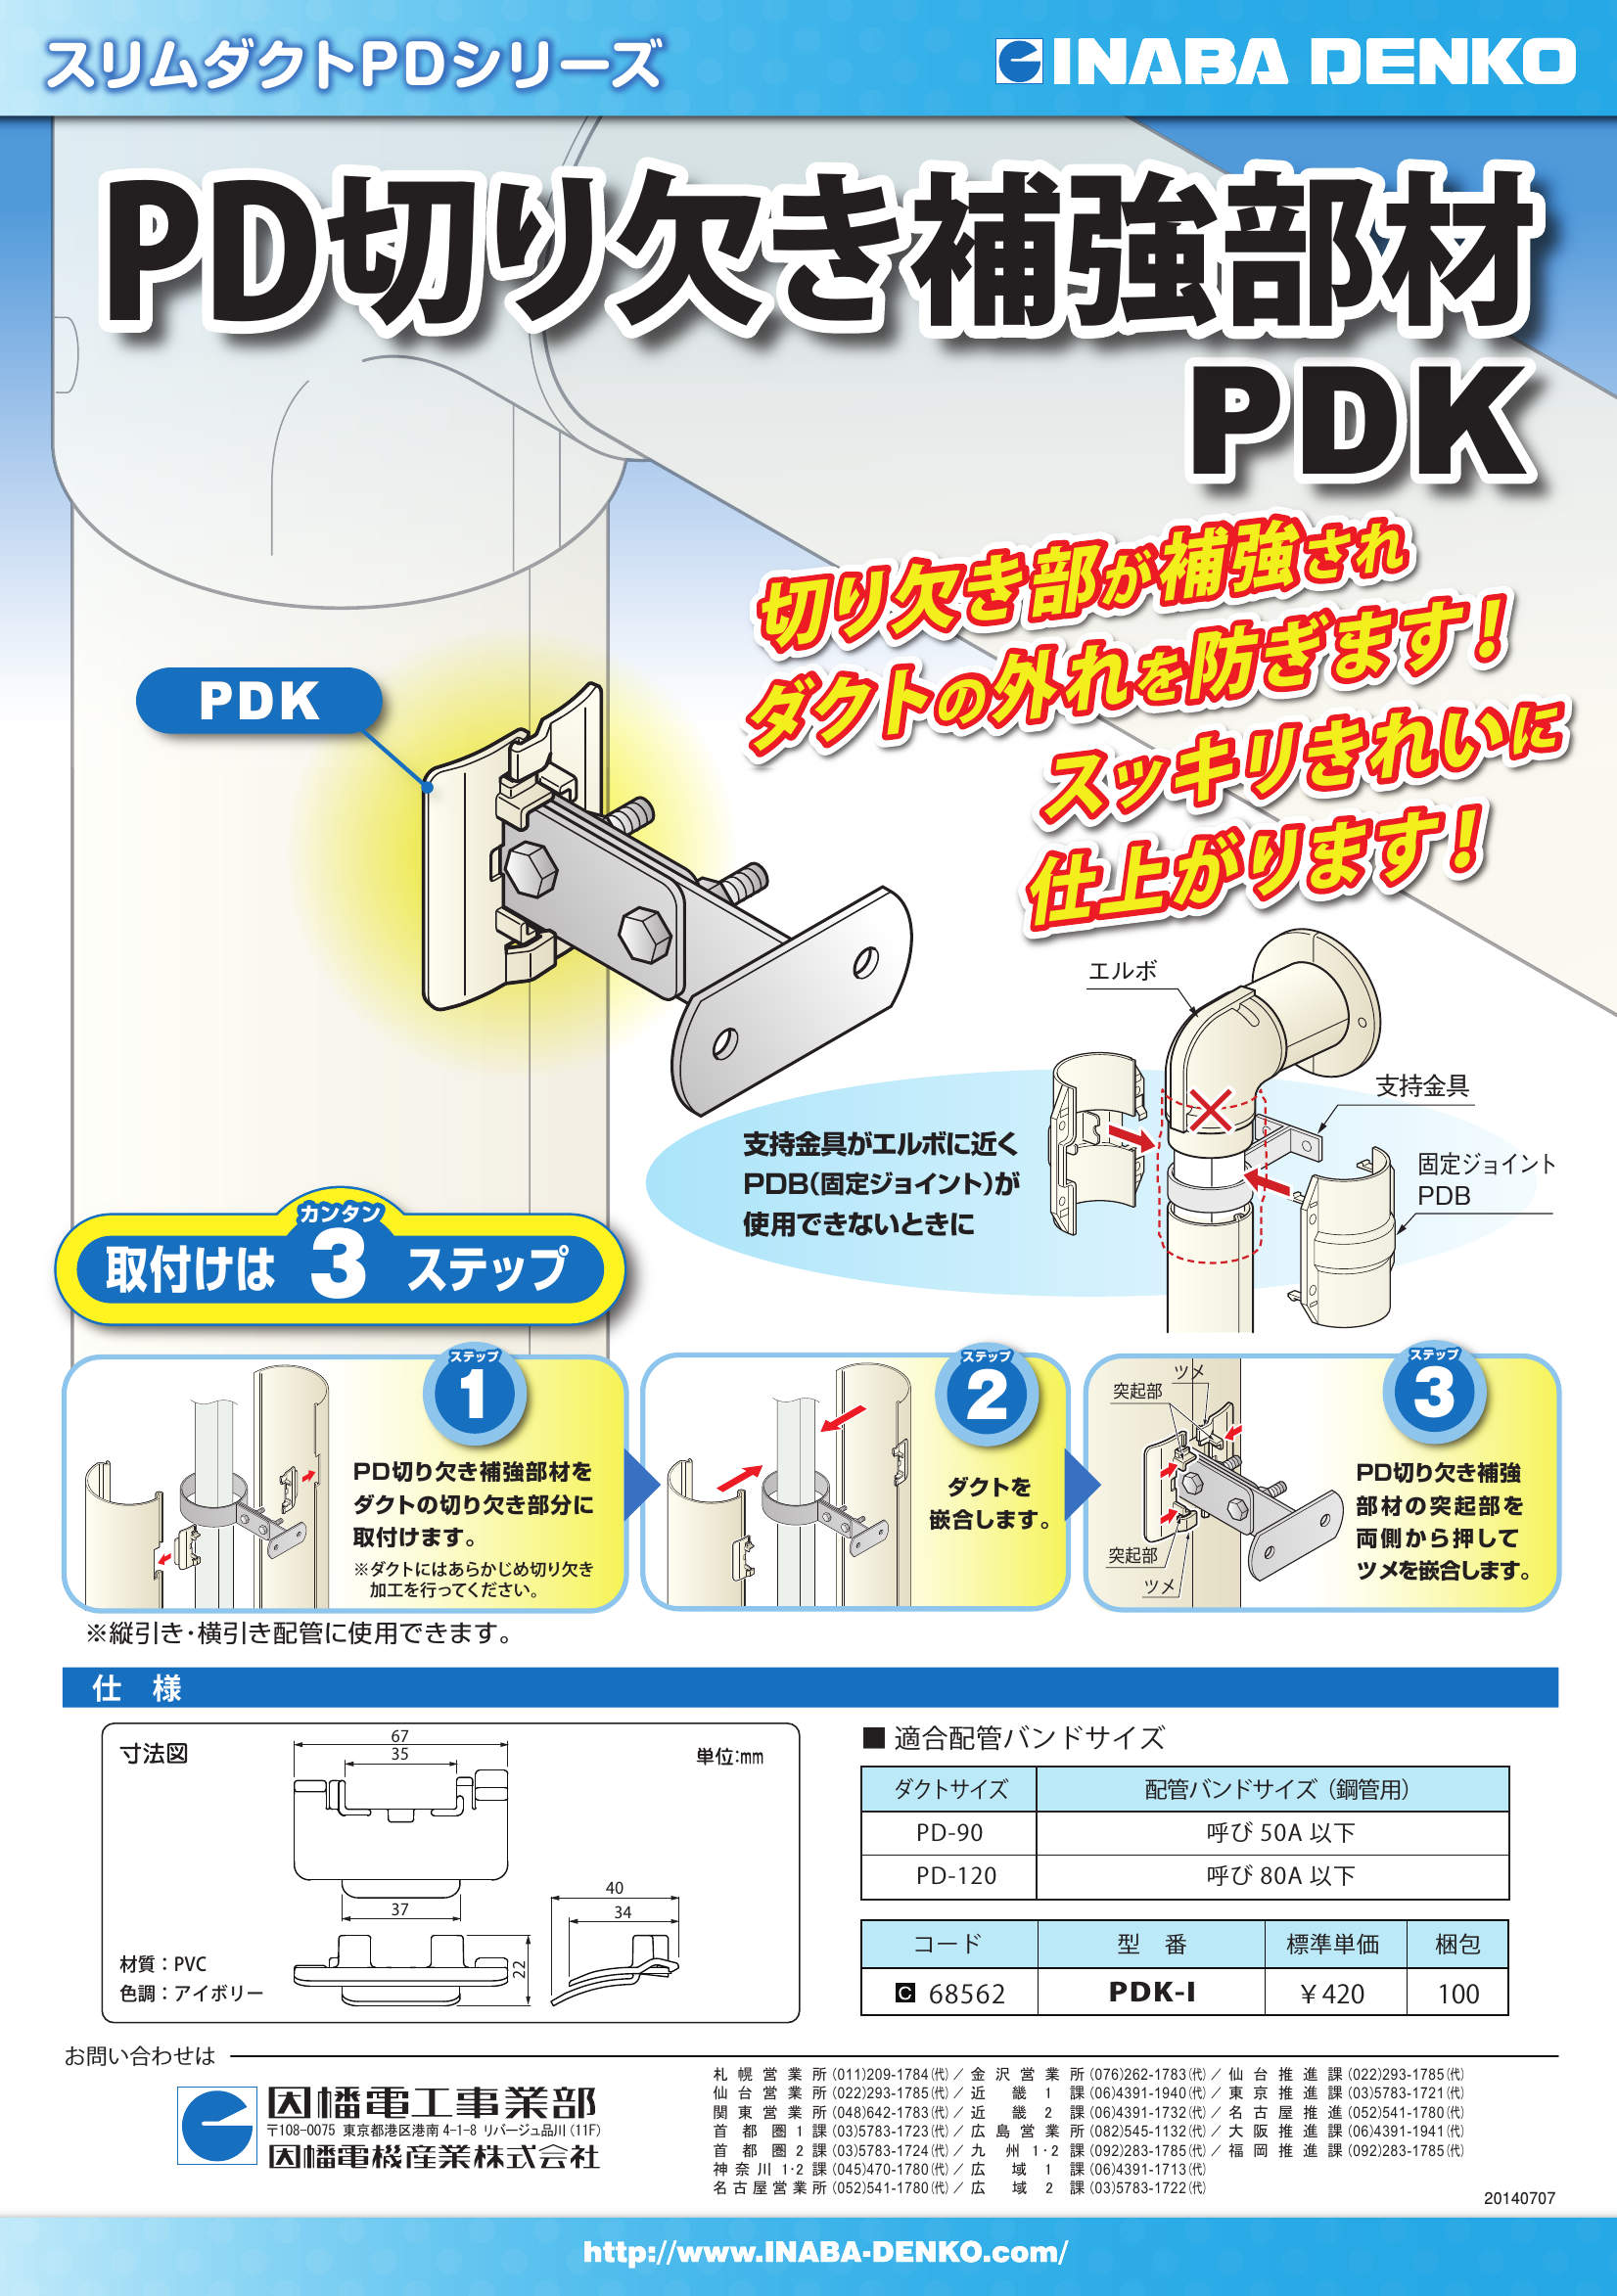 PDK_製品パンフレット_20140708.pdf